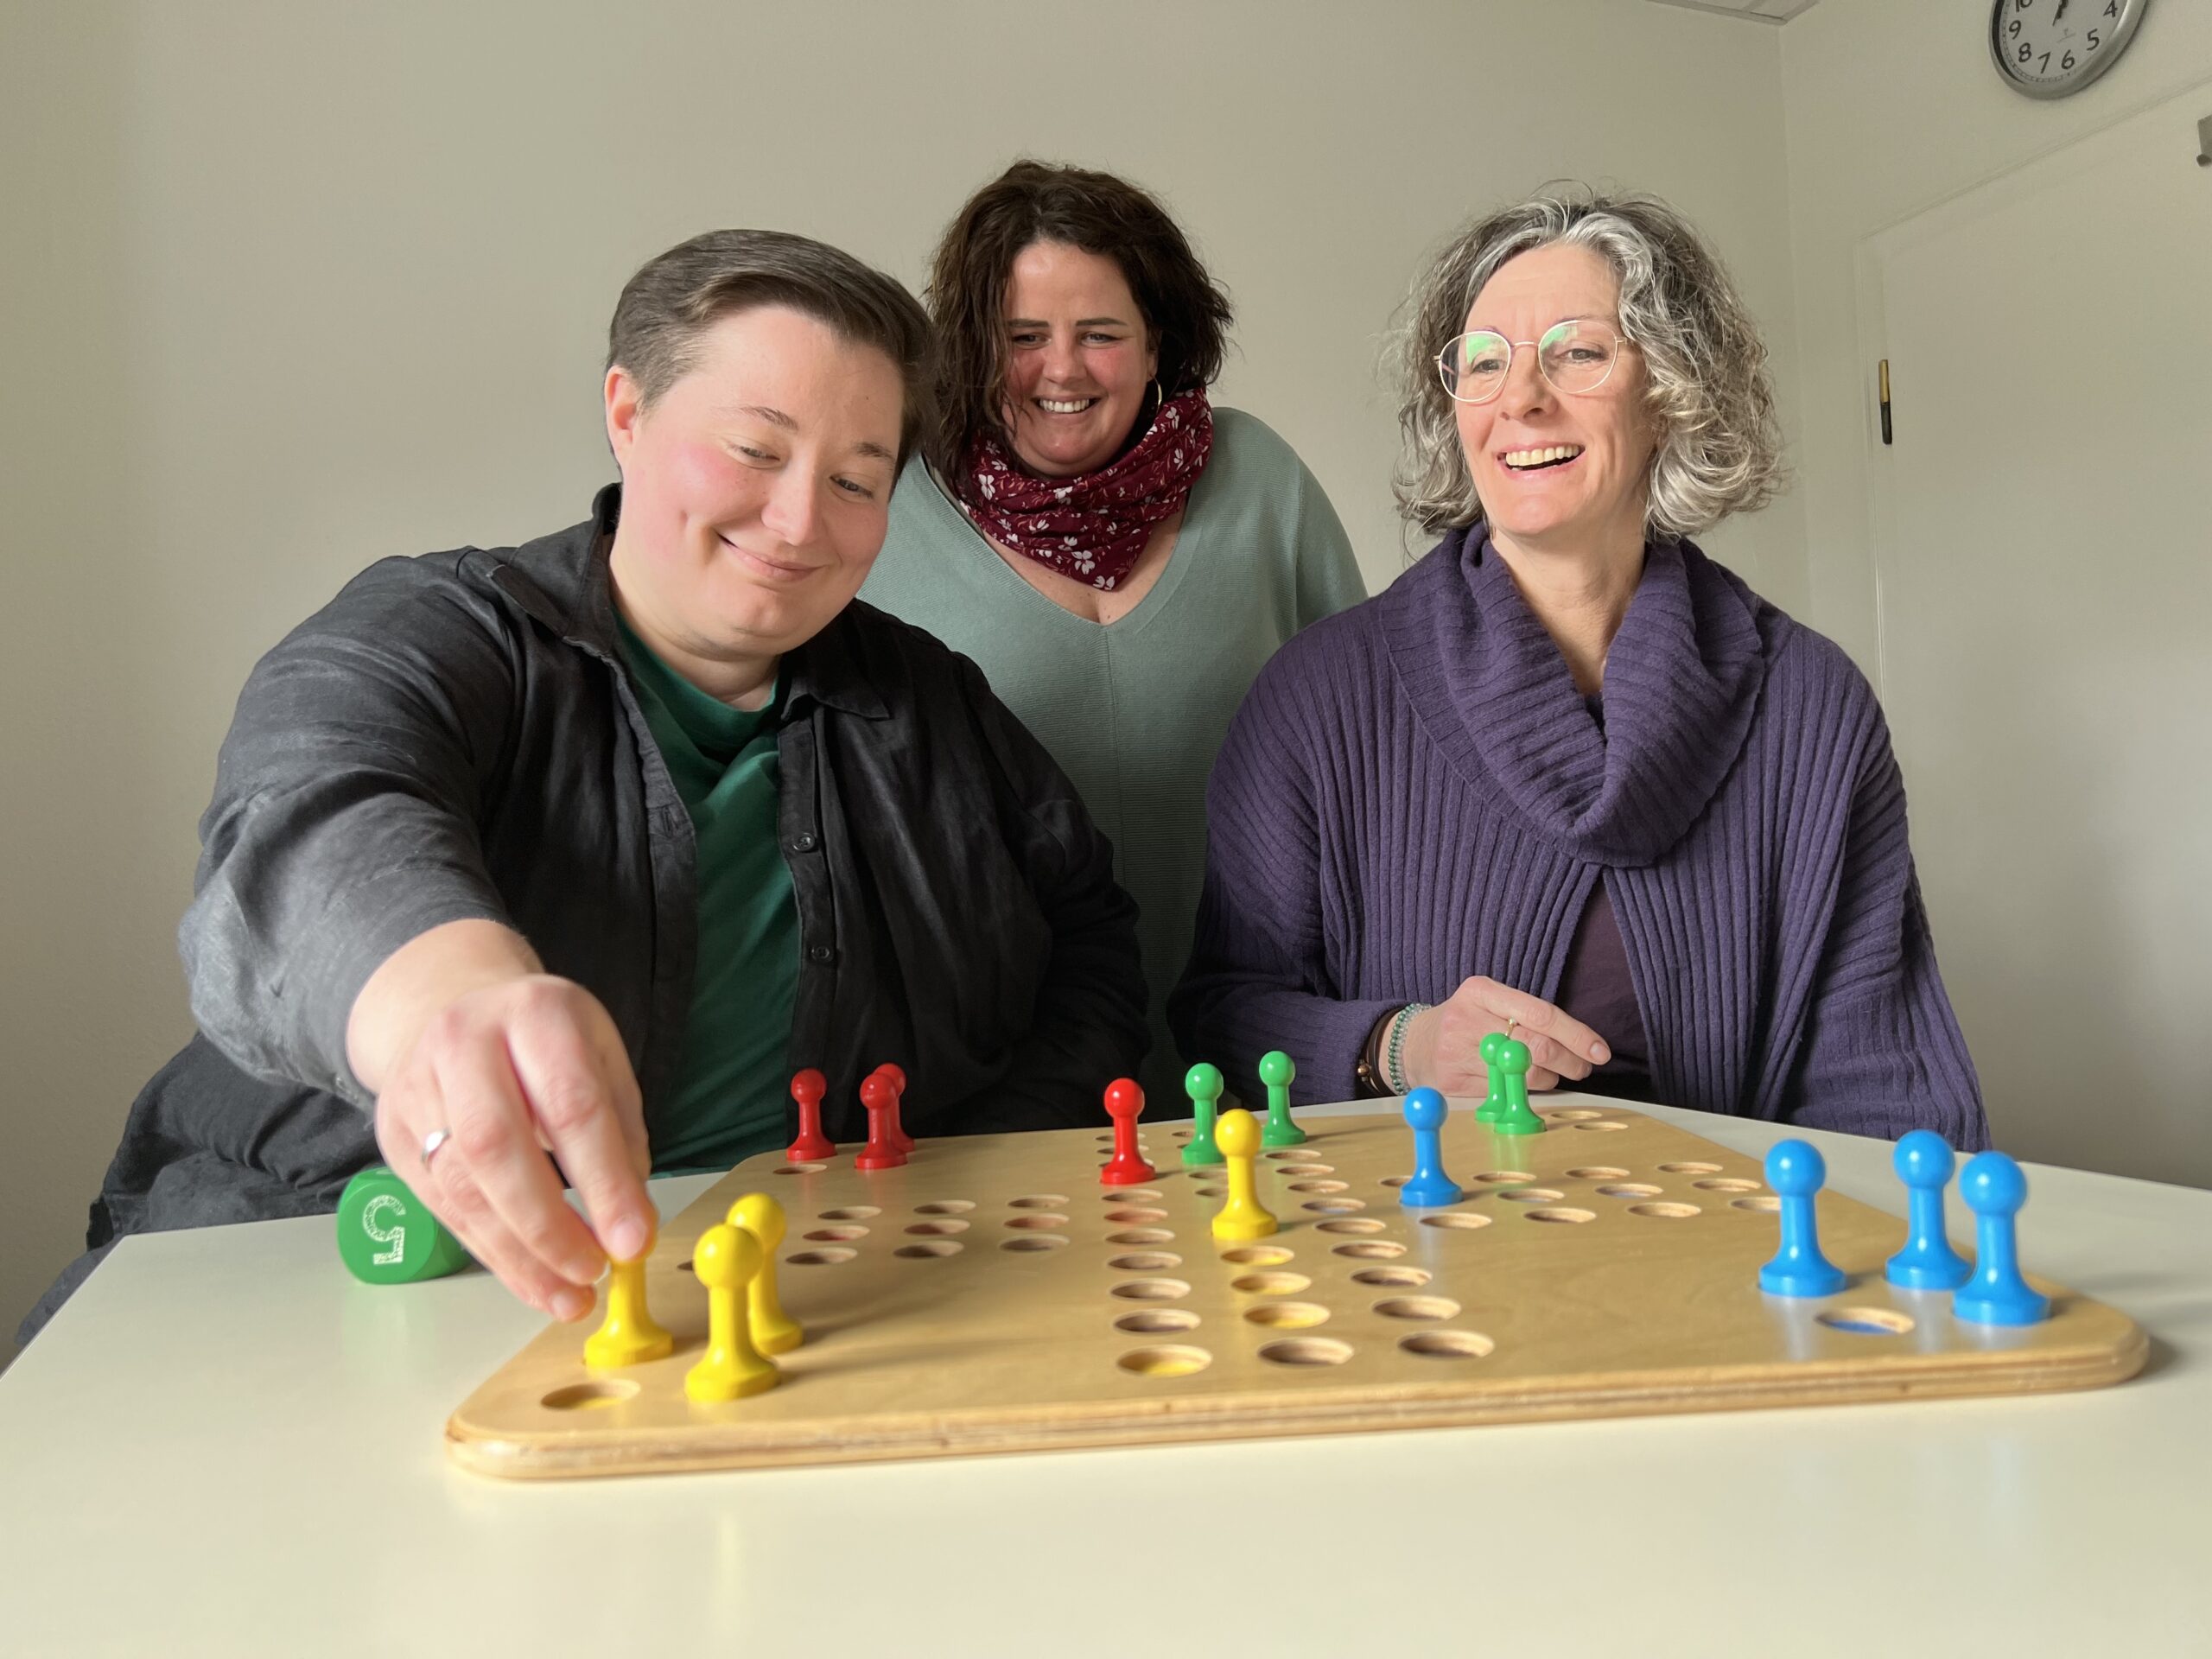 Drei Frauen spielen an einem Tisch das Spiel "Mensch ärgere Dich nicht".